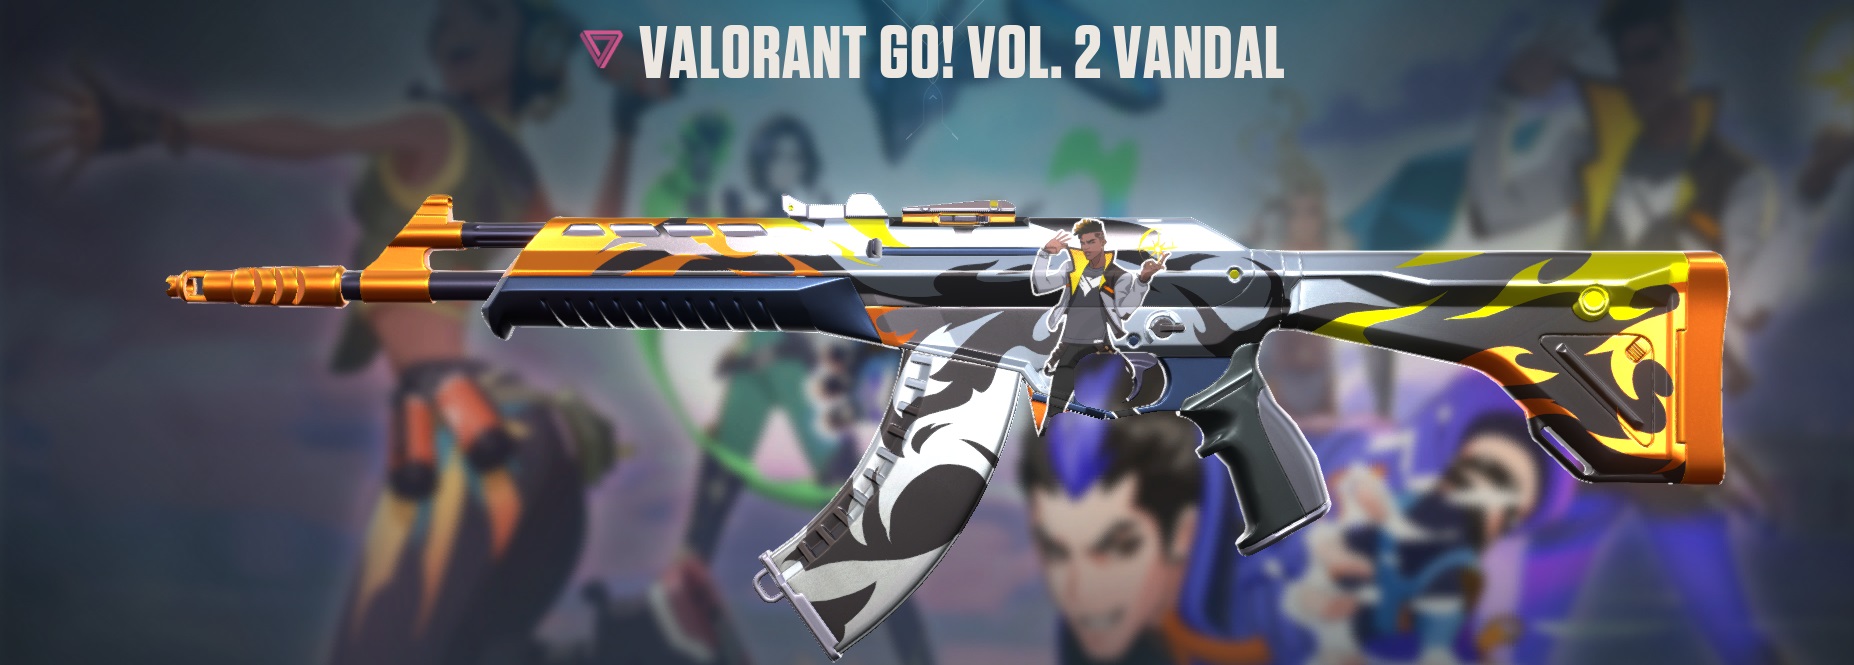 Valorant Go! Vol. 2 Vandal Skin